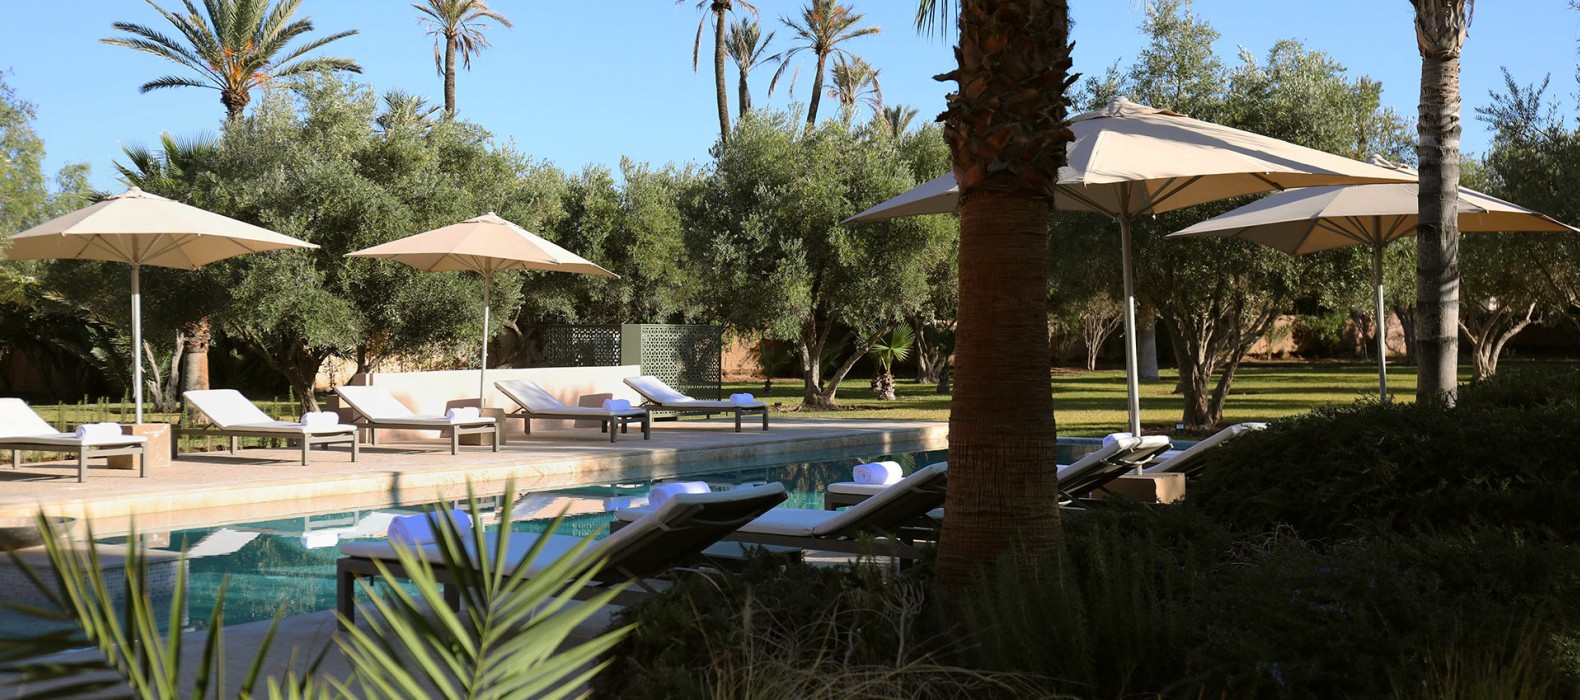 Pool area of Villa Shakir in Marrakech